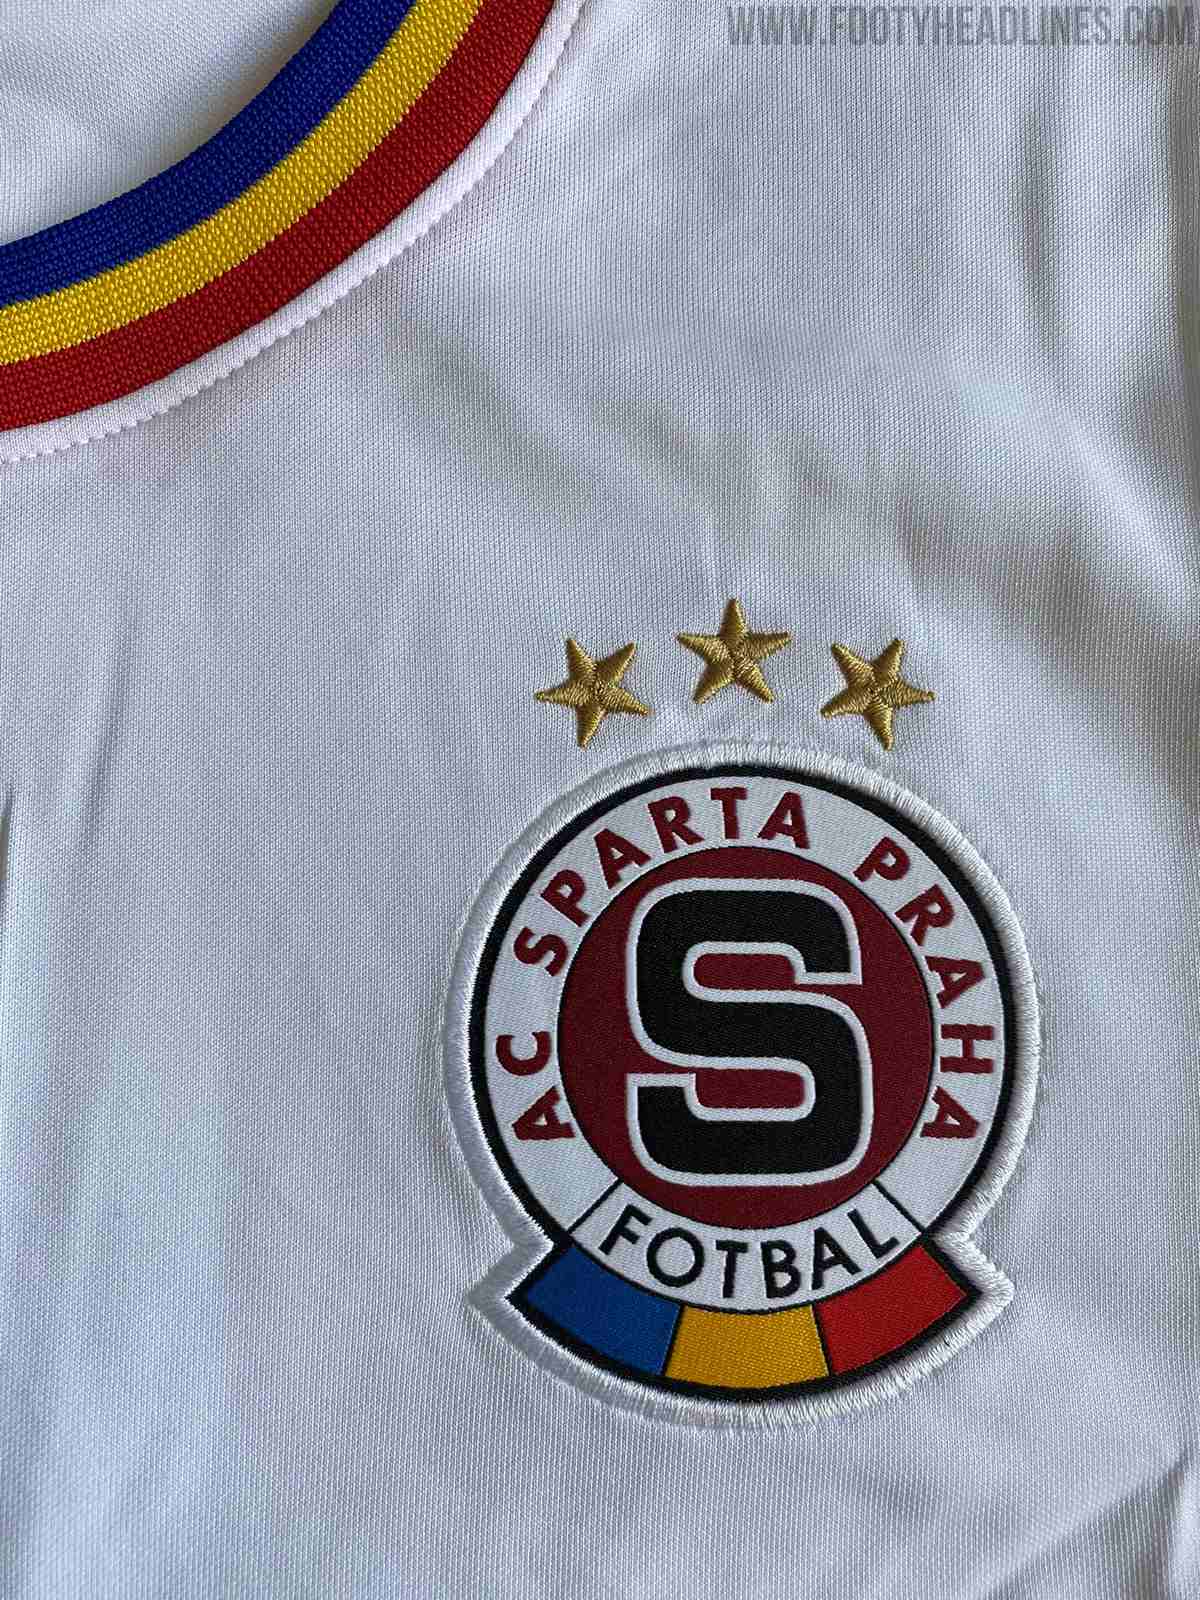 Sparta Prague 20-21 Away Kit Leaked? - Footy Headlines